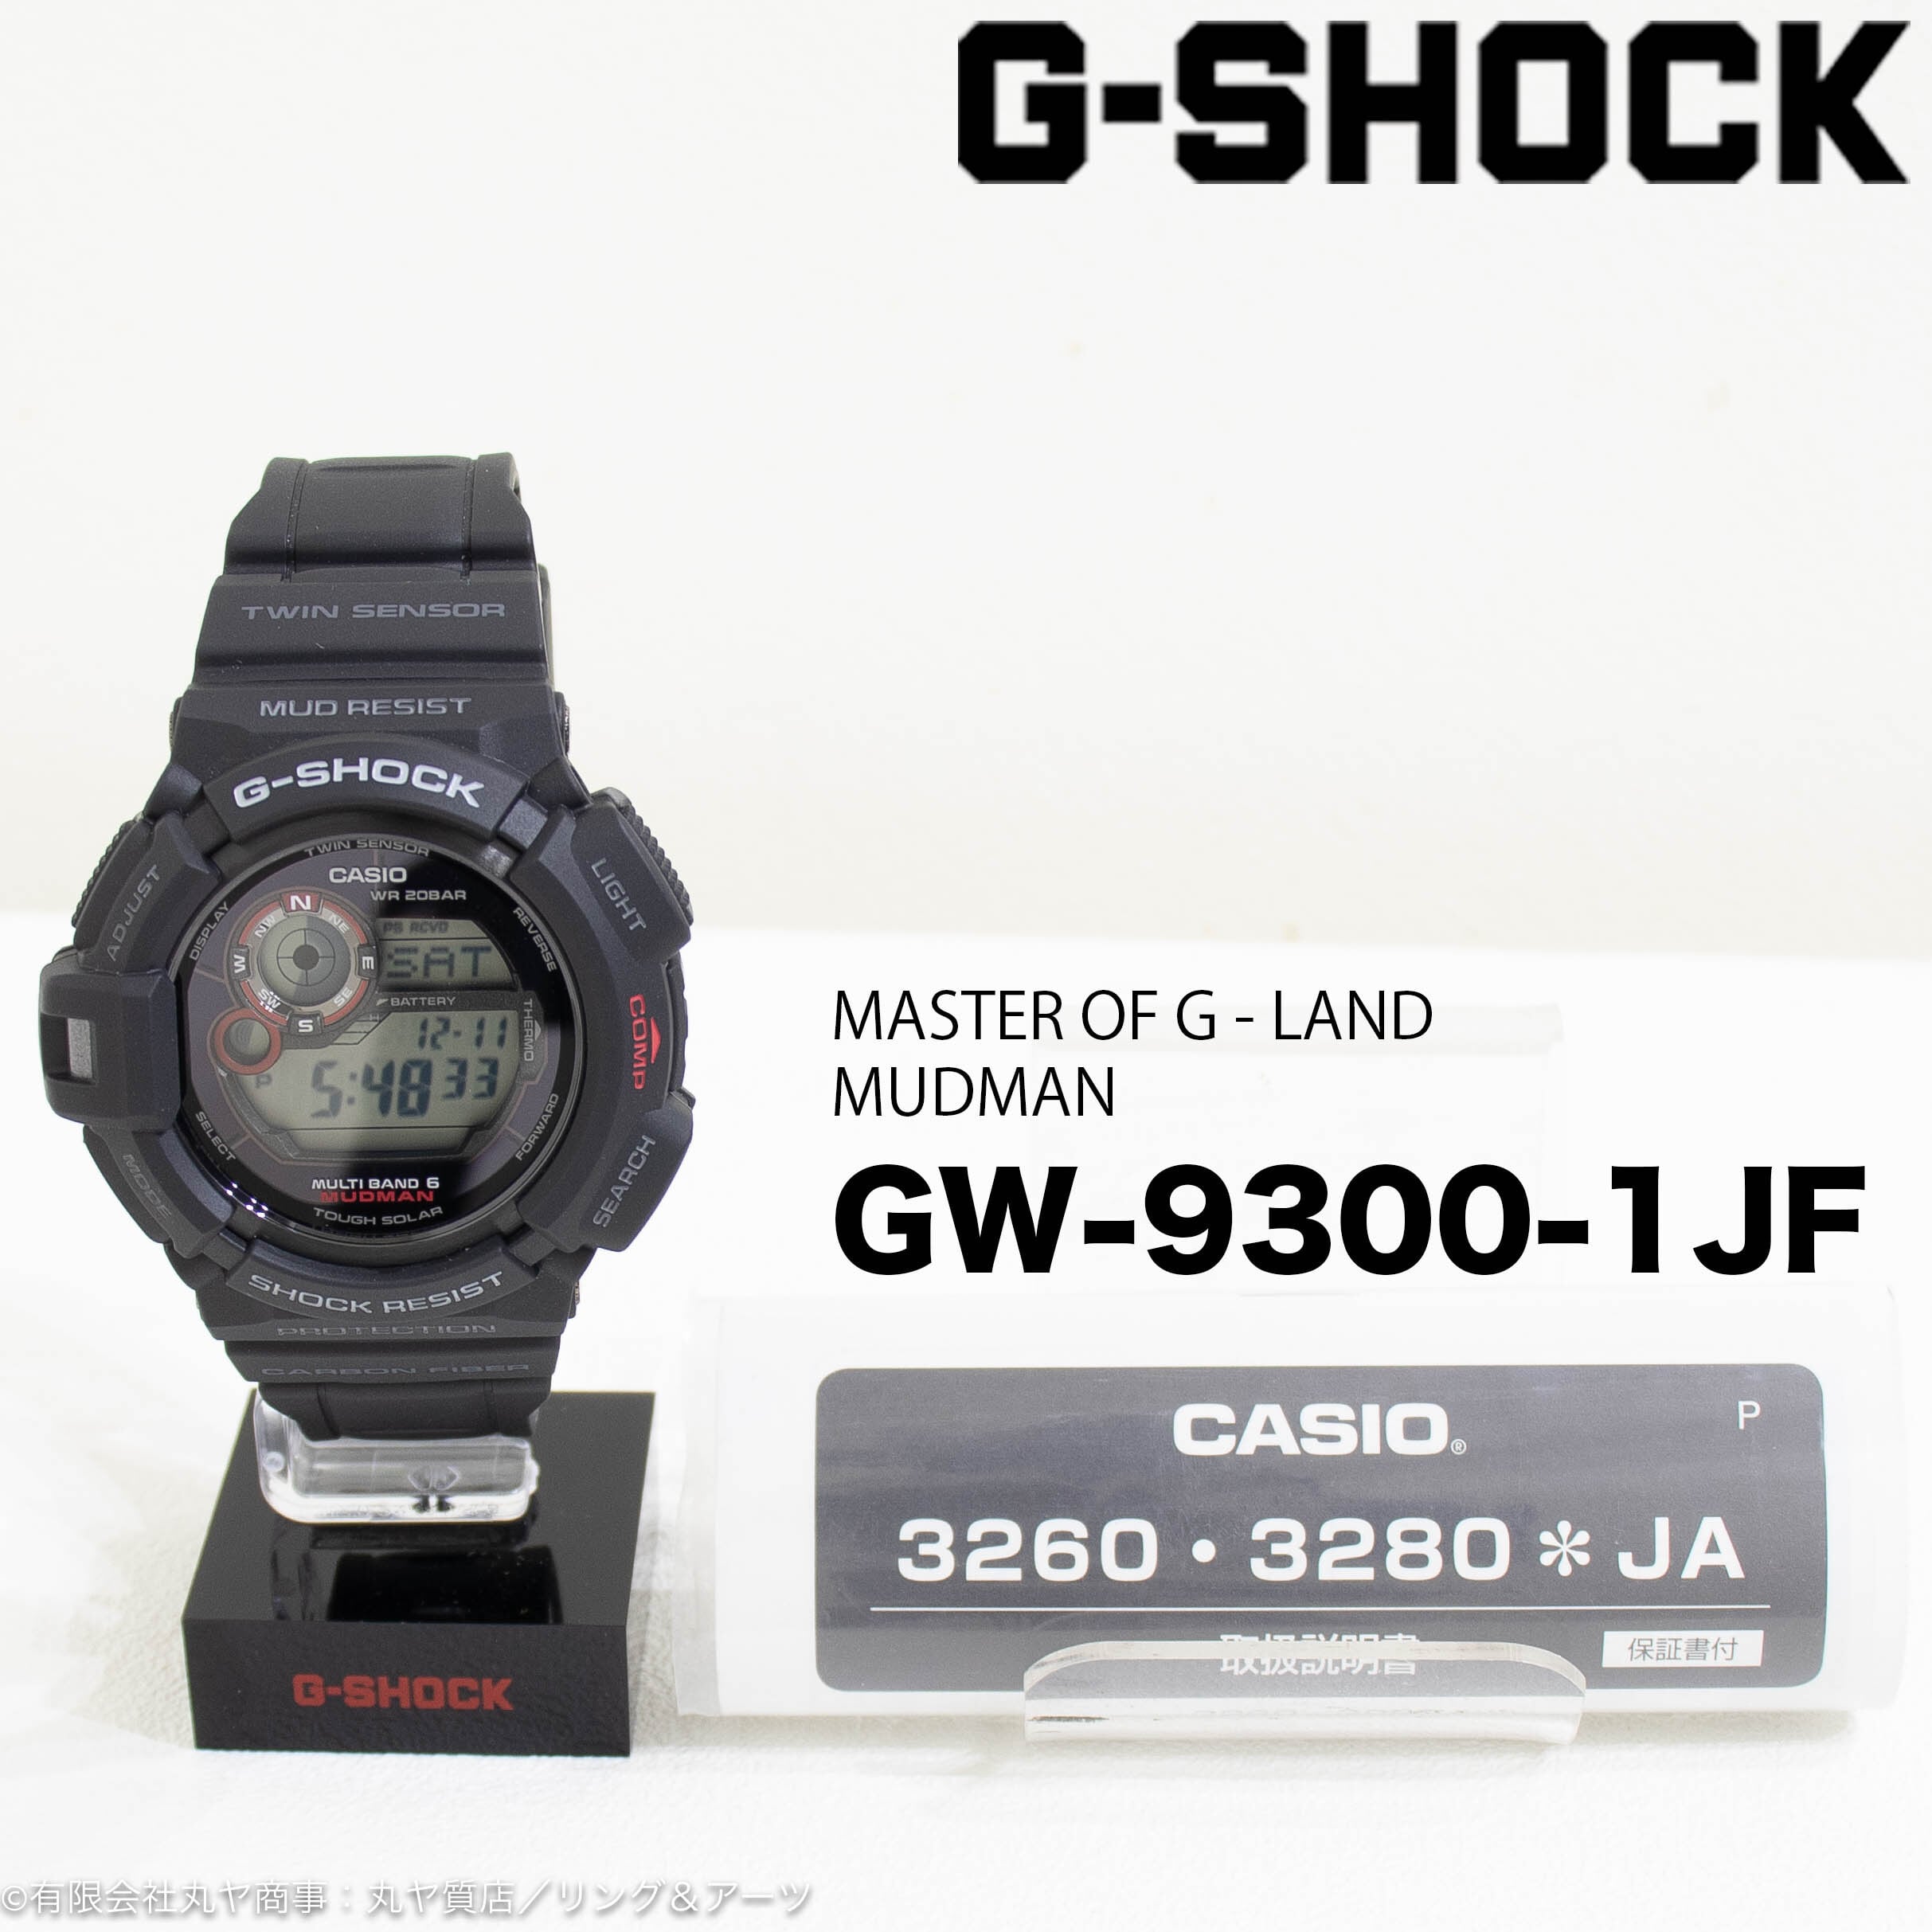 G -SHOCK(CASIO):マスターオブG-ランド/マッドマン/Ref.GW-9300 -1JF型